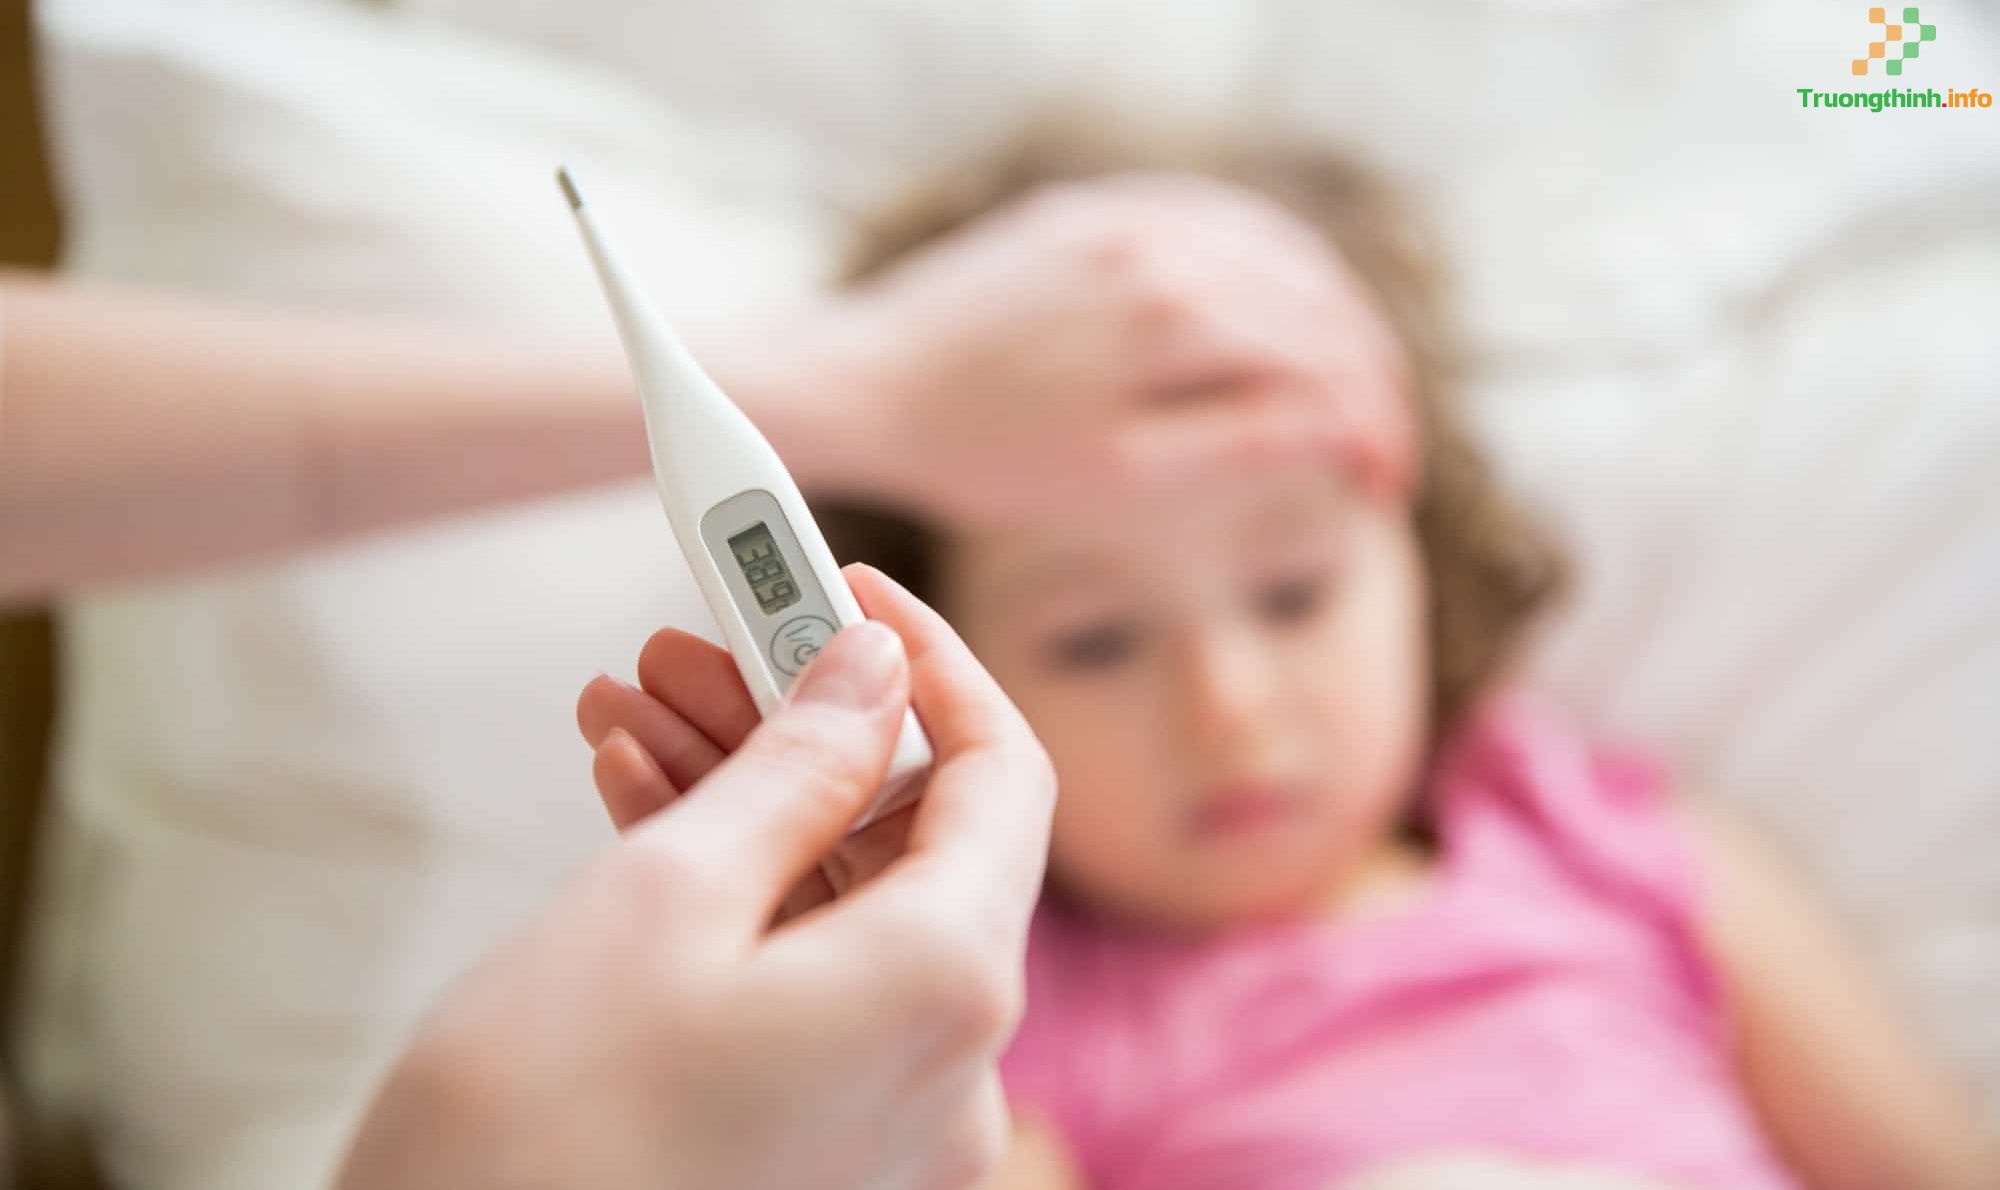                           Bao nhiêu độ là sốt ở người lớn, trẻ em? Sốt cao, sốt nhẹ là bao nhiêu độ?